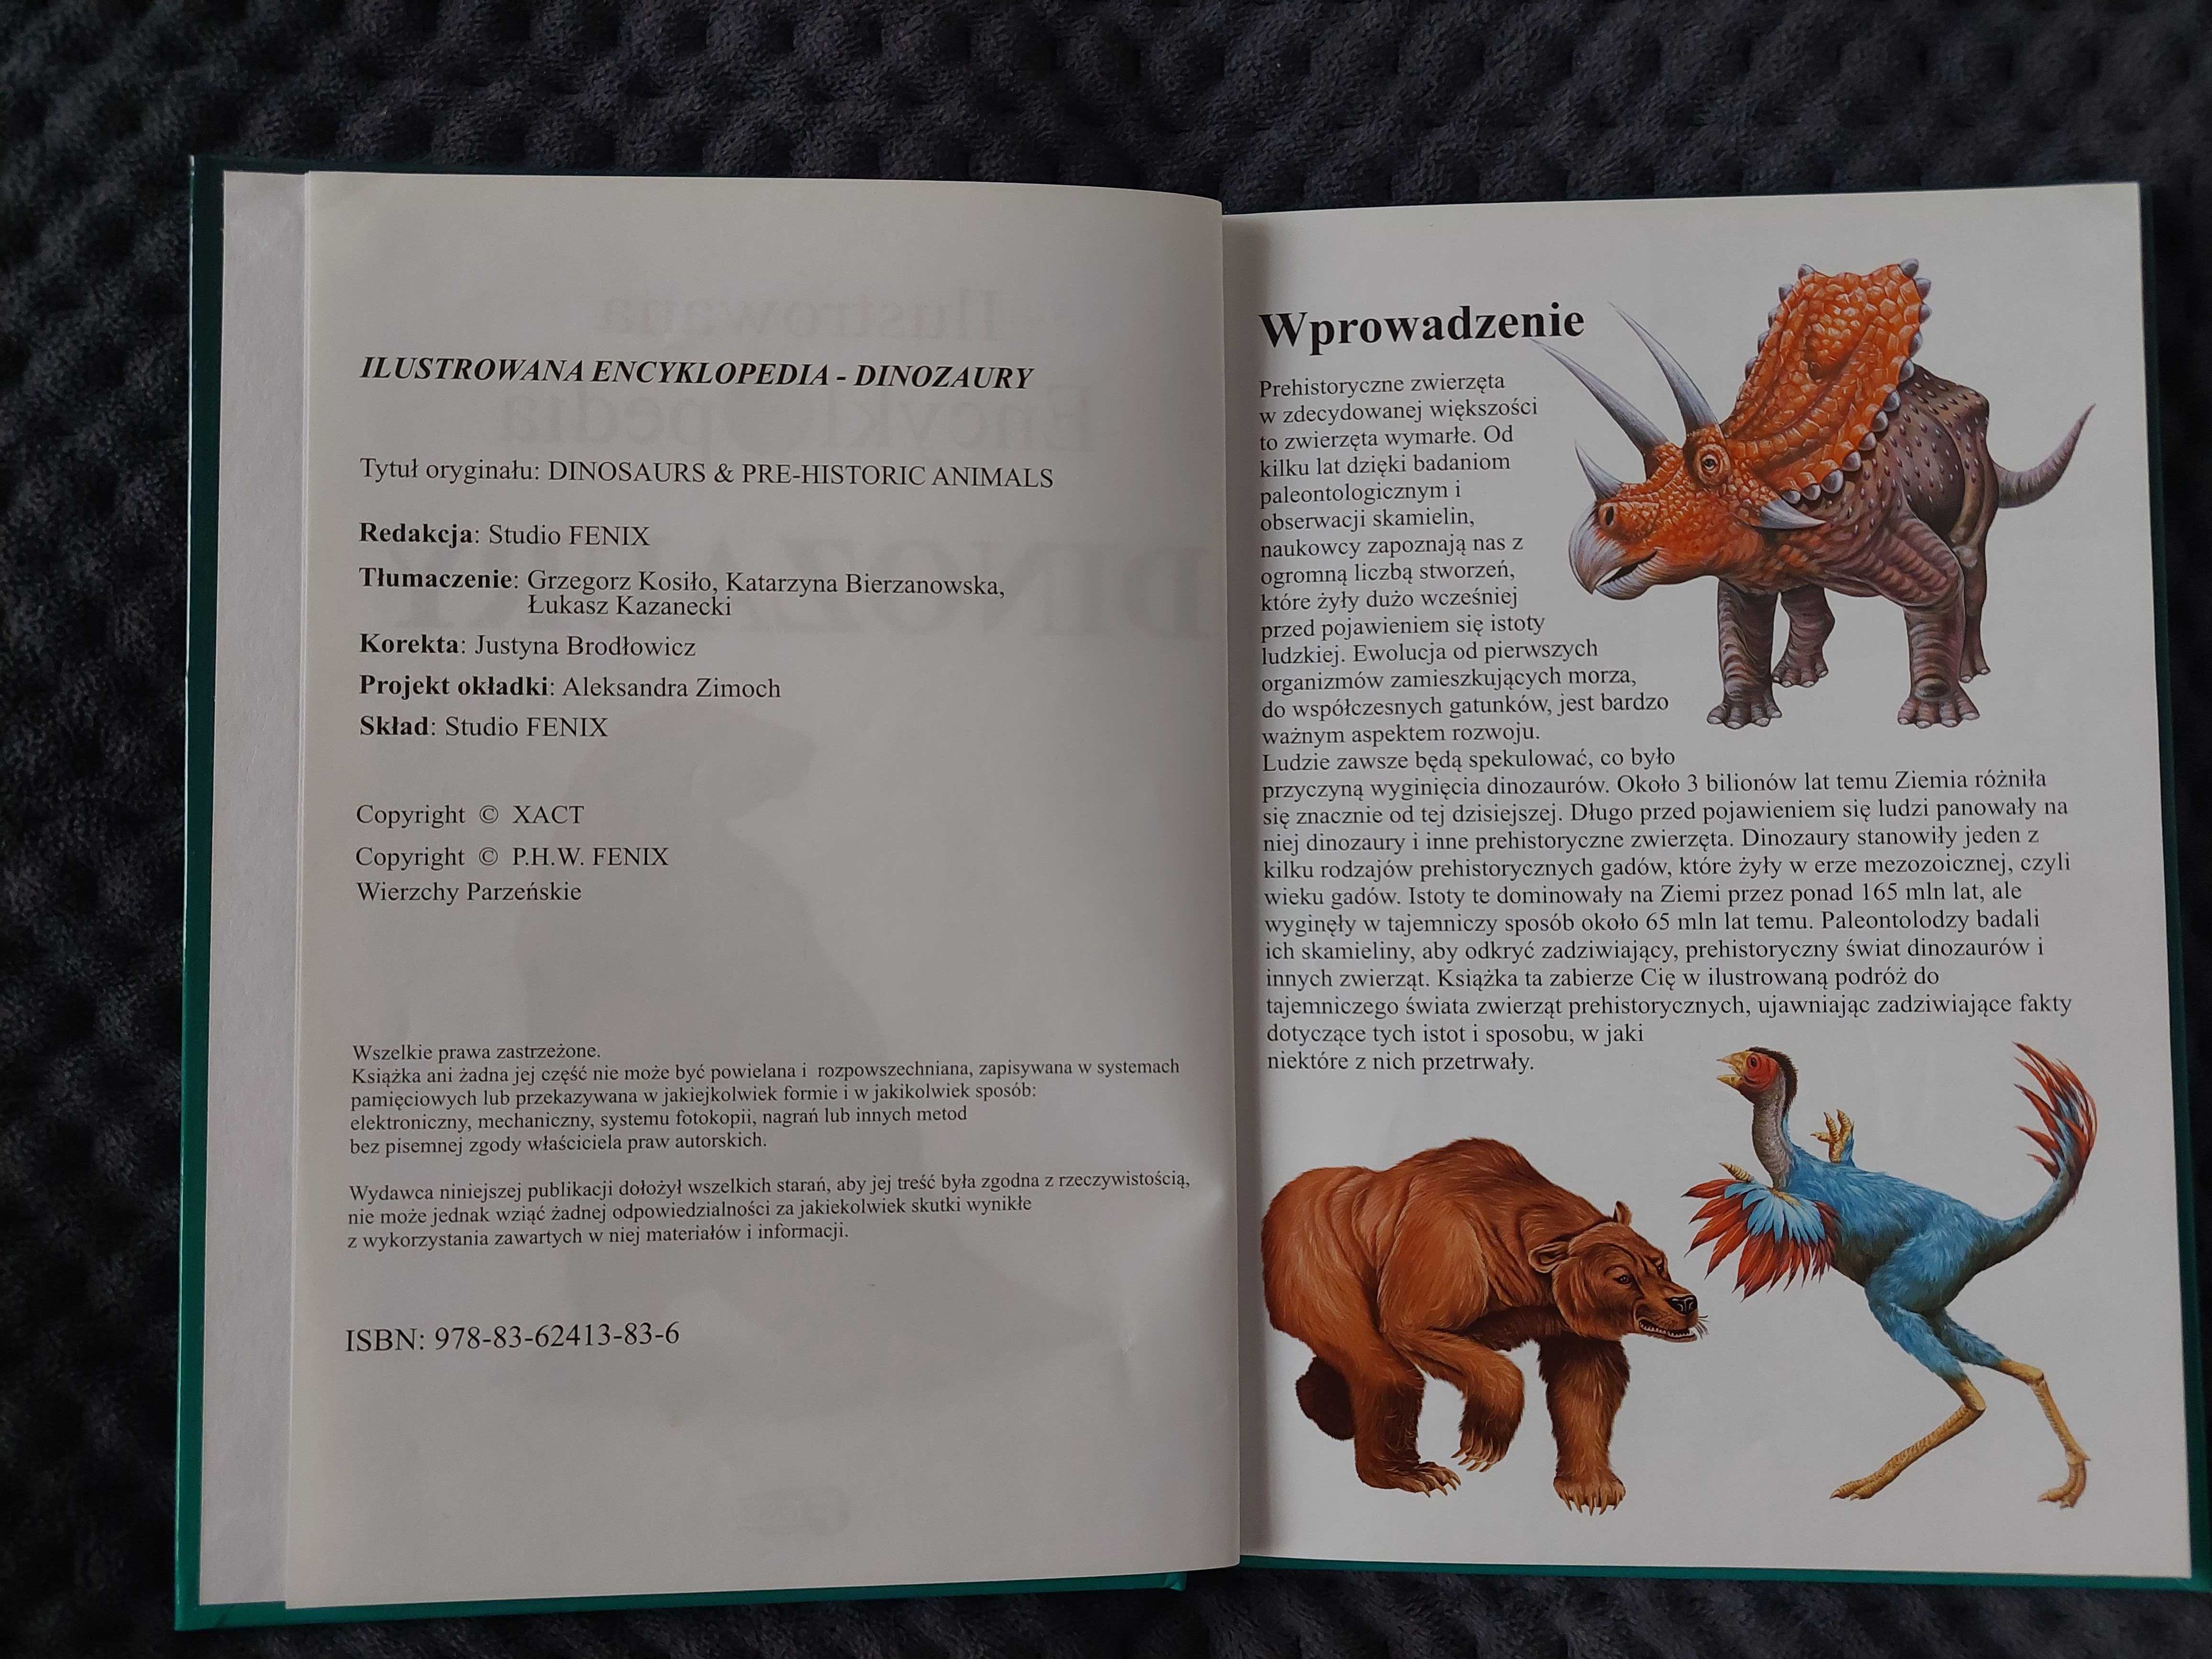 Książka "Ilustrowana encyklopedia dinozaury"